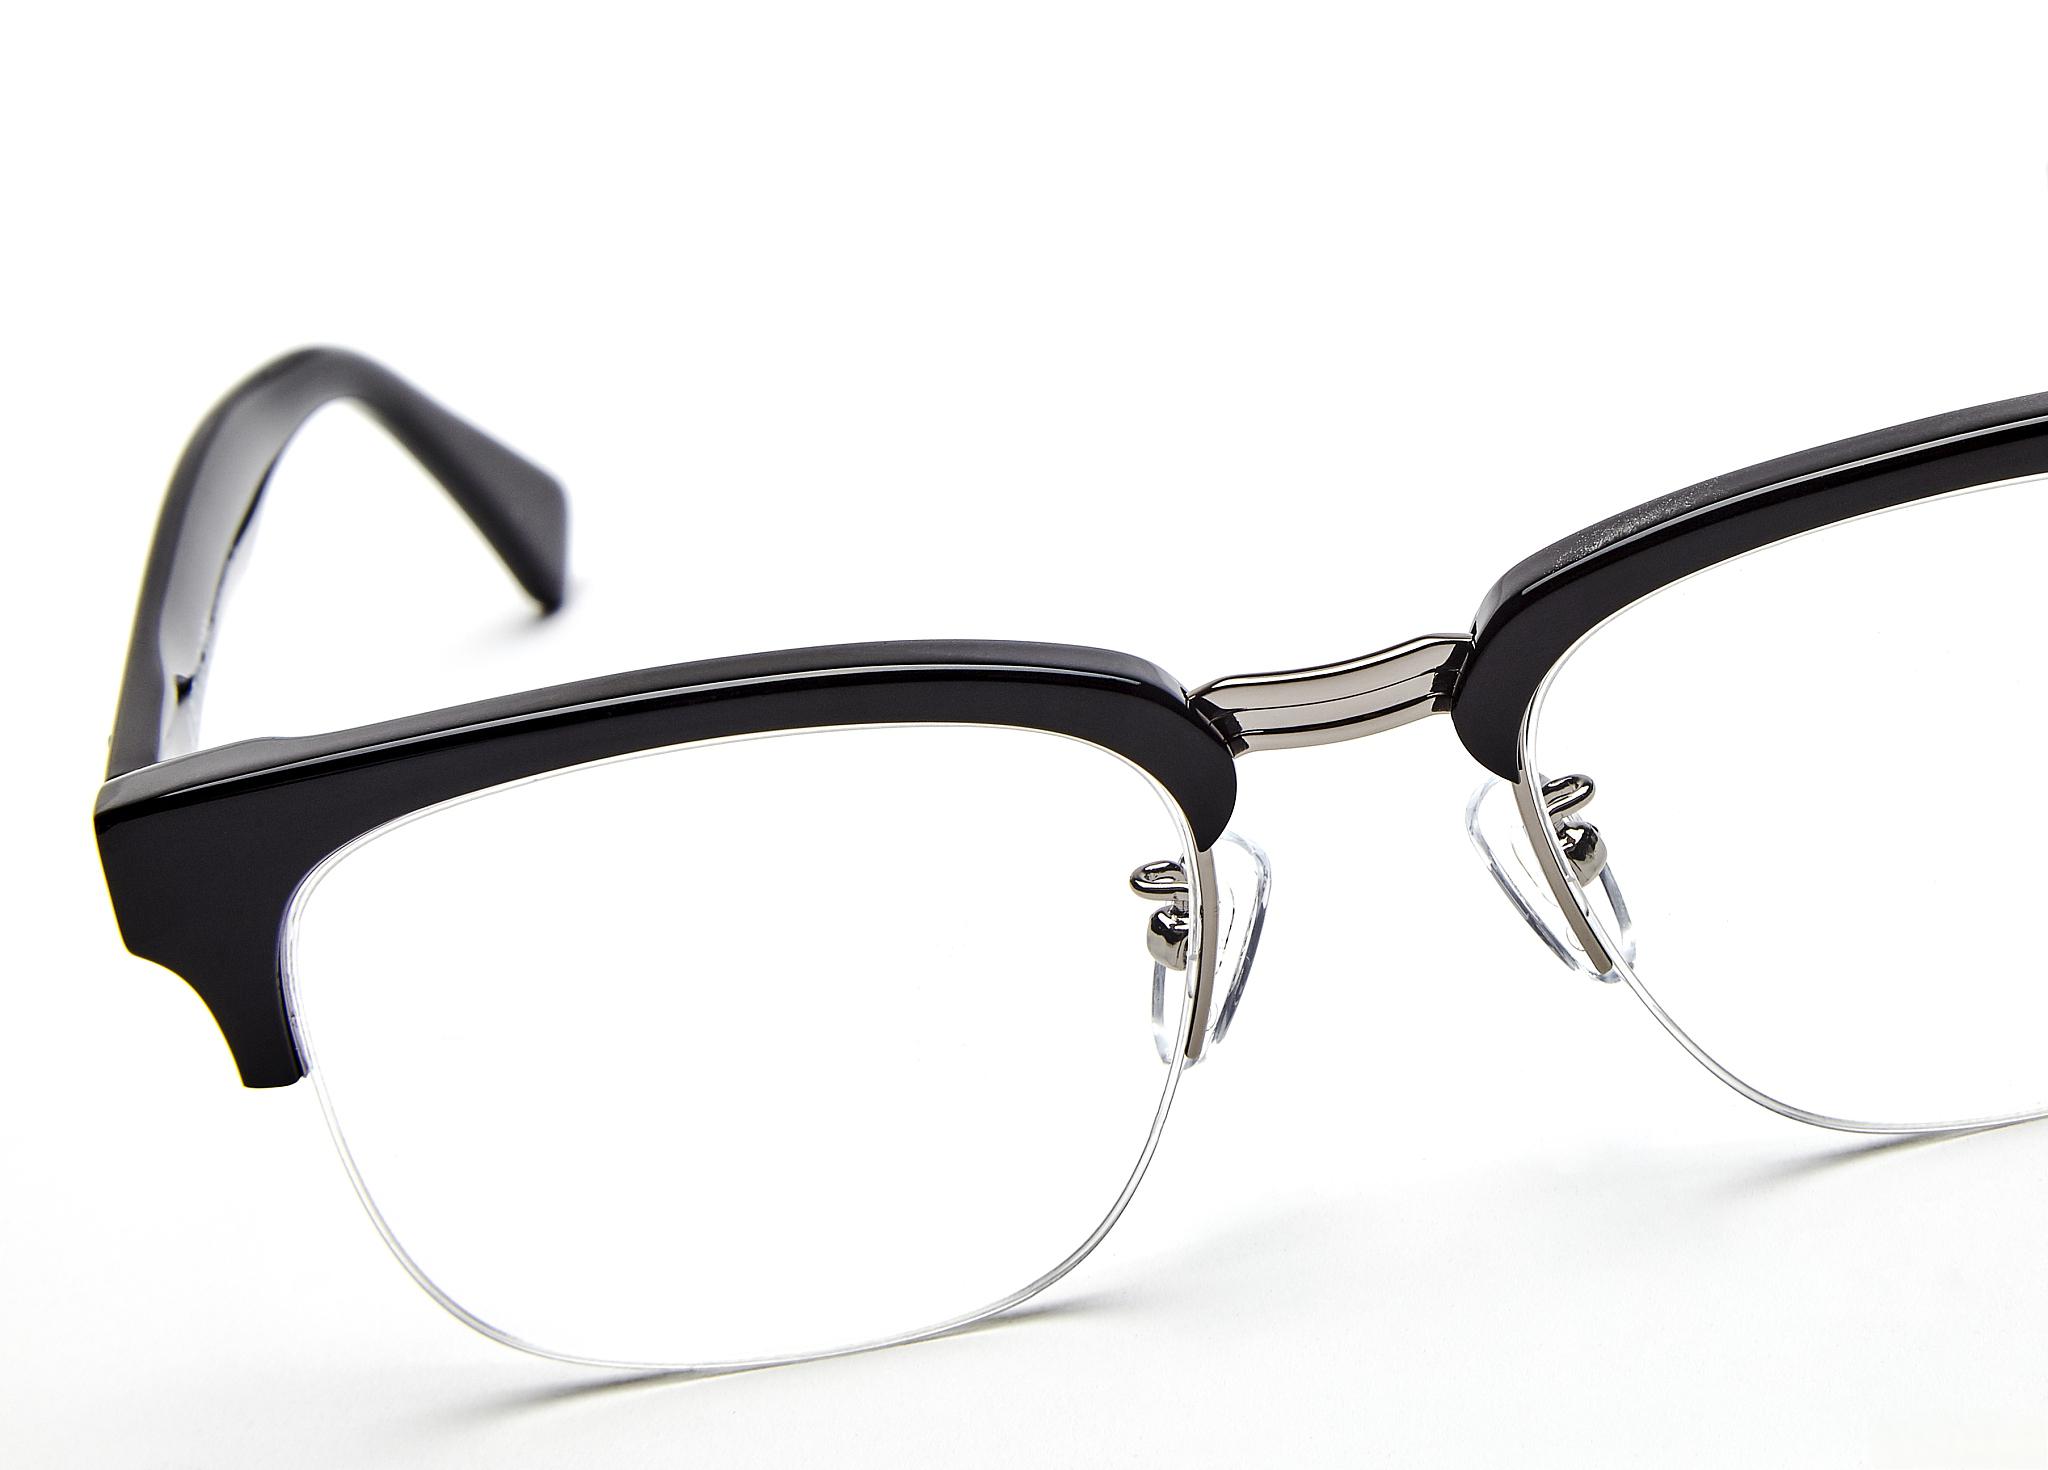 近视眼镜是近视患者常用的矫正工具,但不同种类的近视眼镜适合不同的